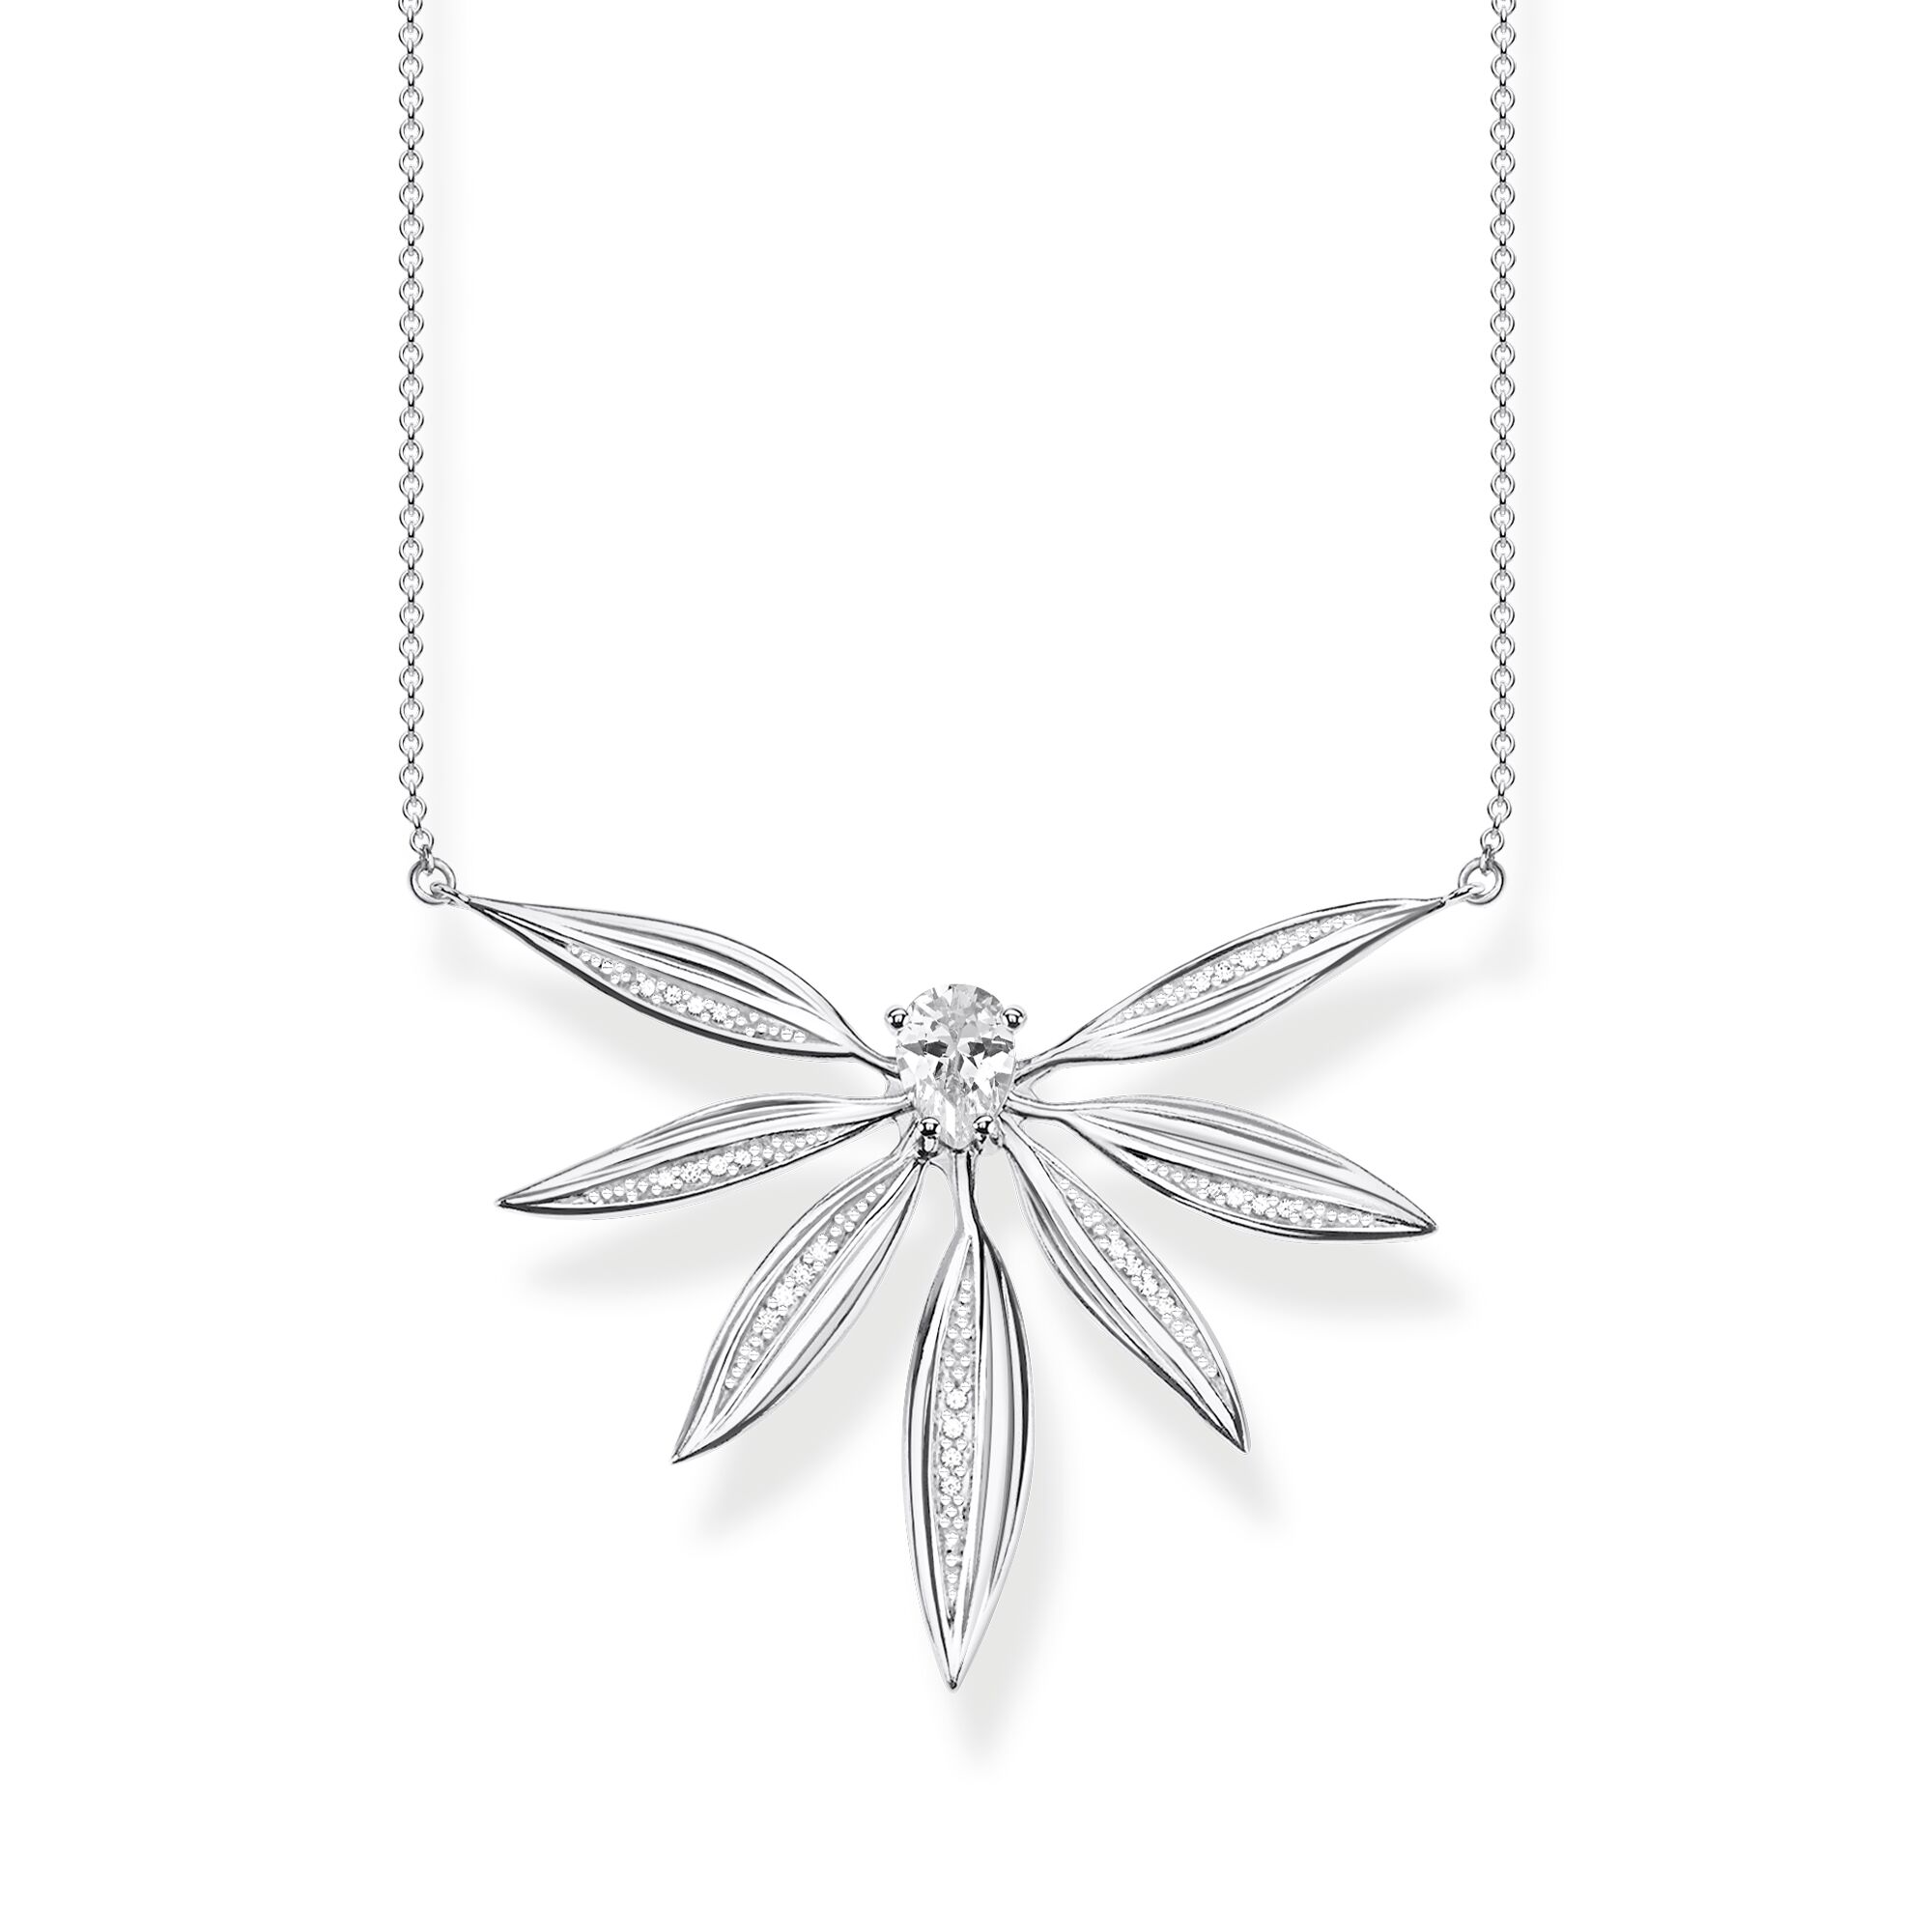 Hurtownia na zamówienie OEM/ODM Naszyjnik z biżuterią dla kobiet ze srebra próby 925 z dużym wisiorkiem w kształcie liścia OEM